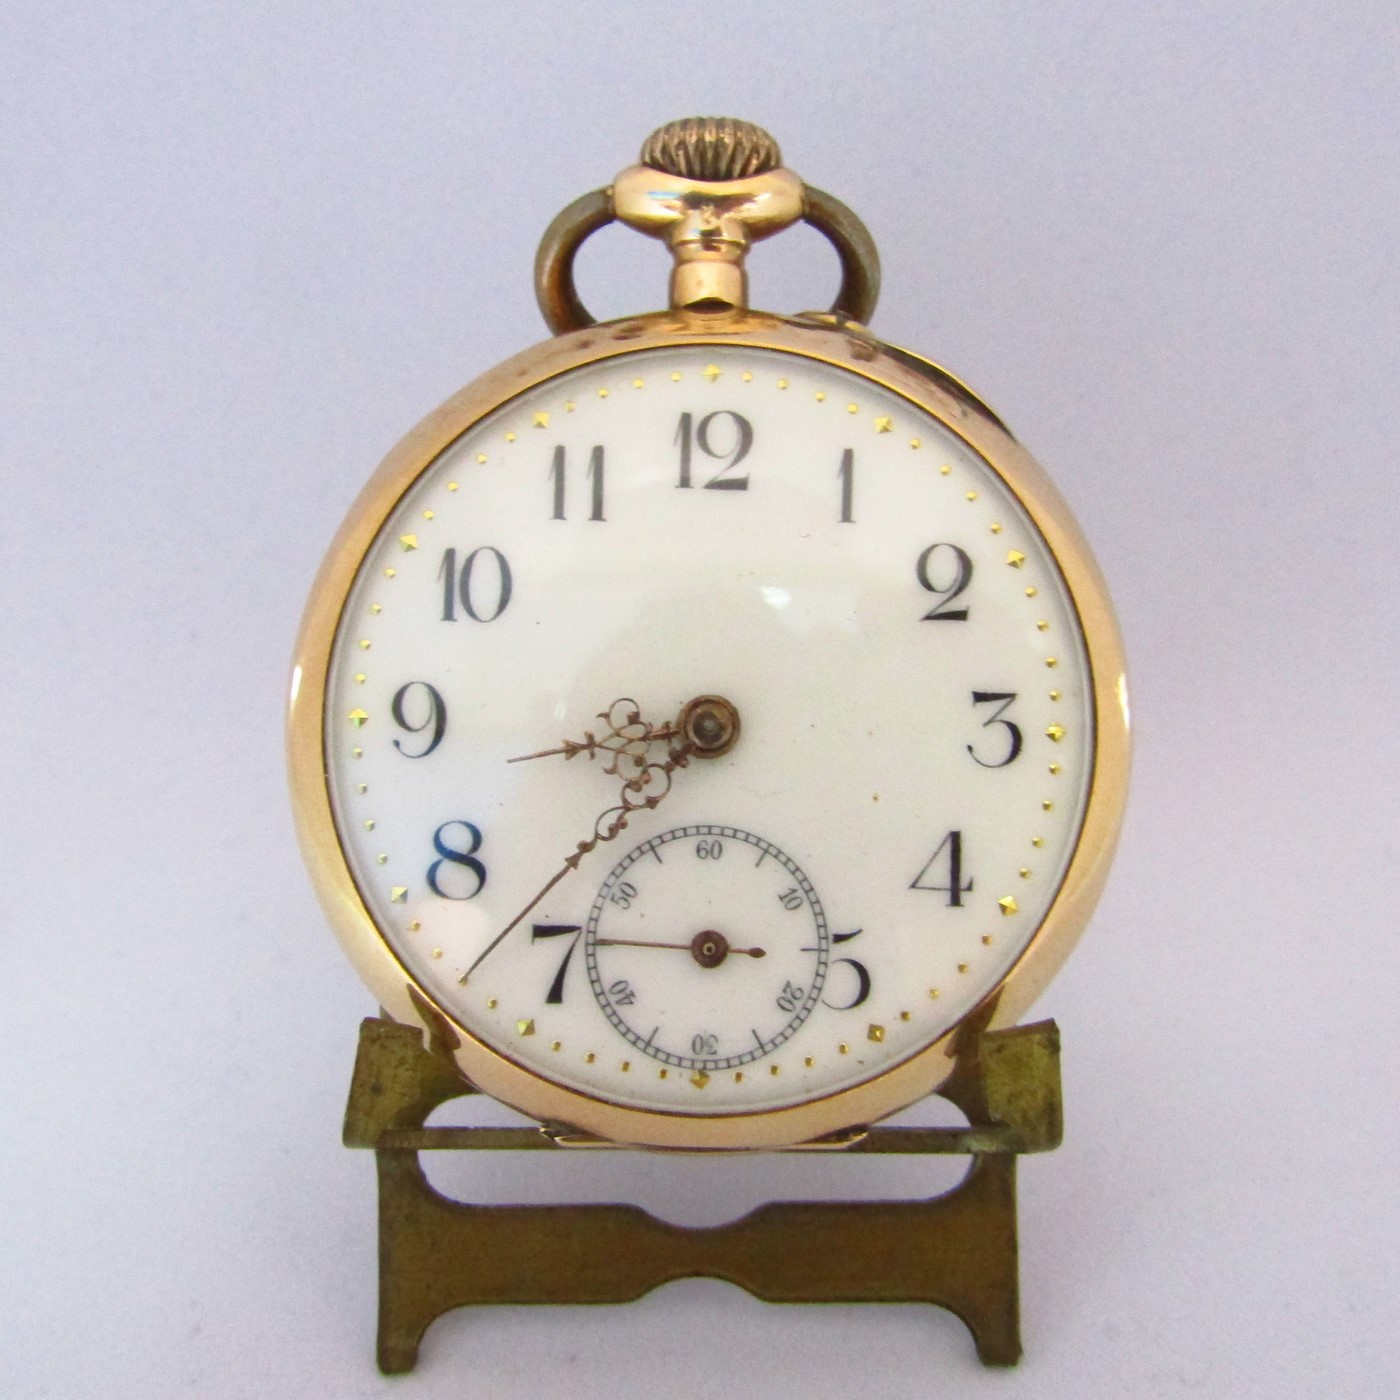 Pocket watch, lepine and remontoir, 14k gold. Switzerland, ca. 1900